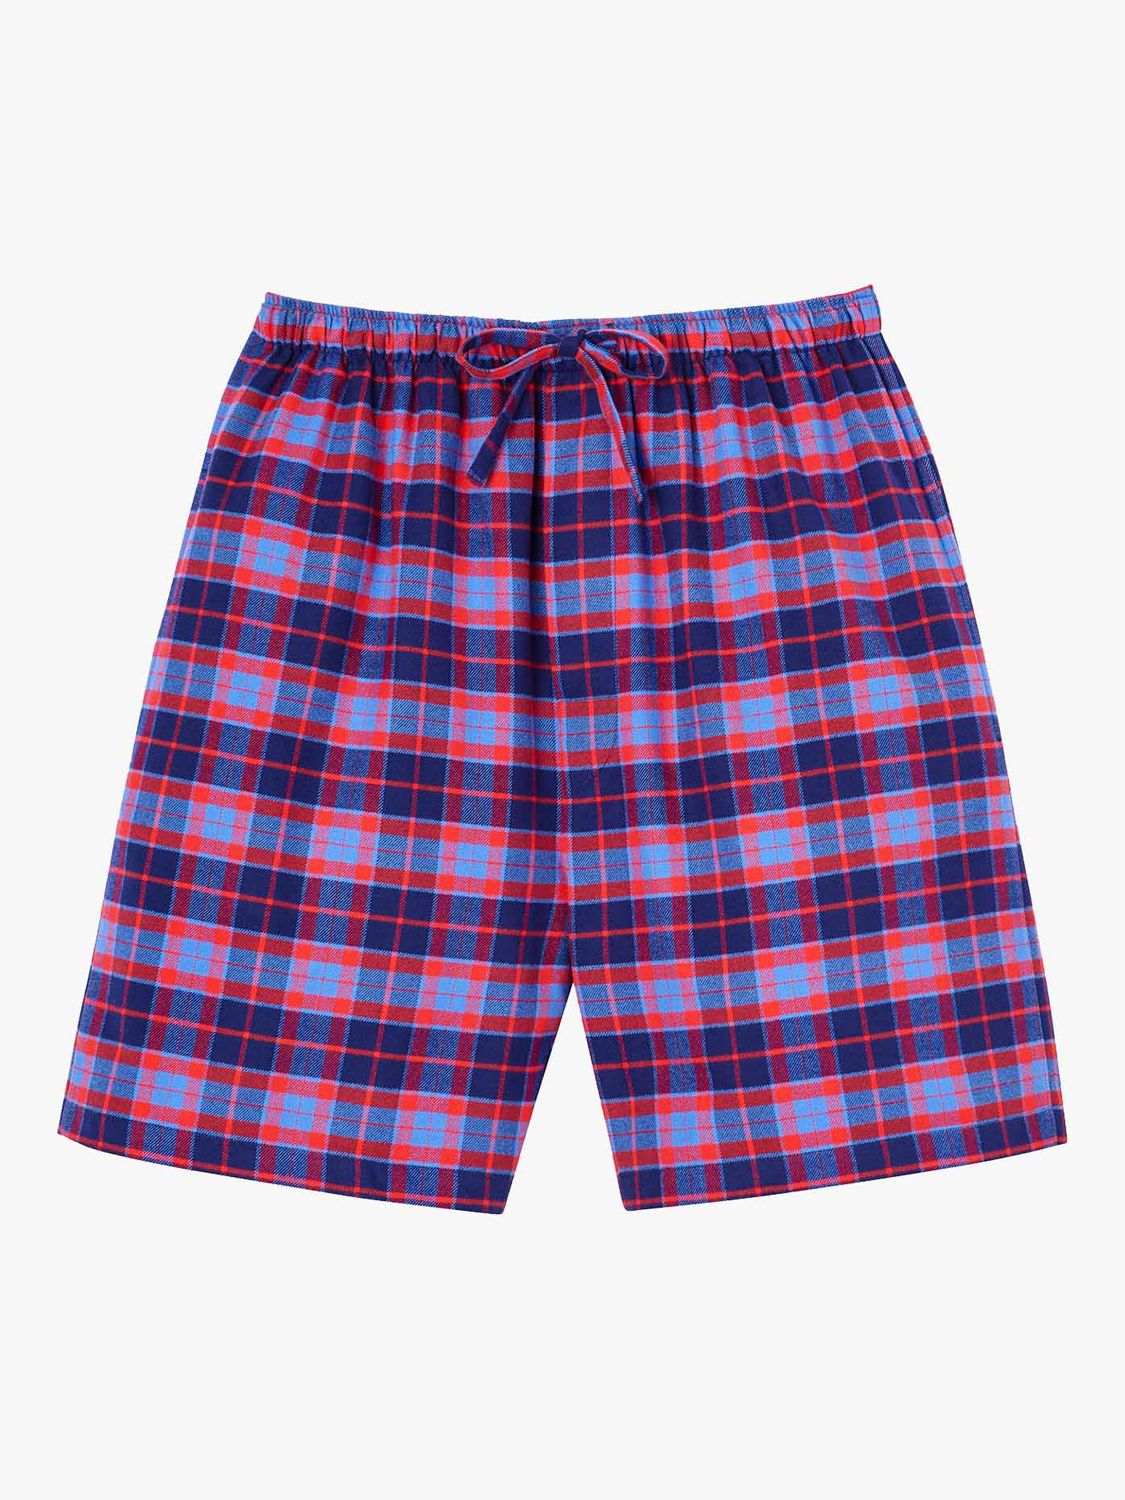 British Boxers Tartan Print Brushed Cotton Pyjama Shorts, Blue/Red, S